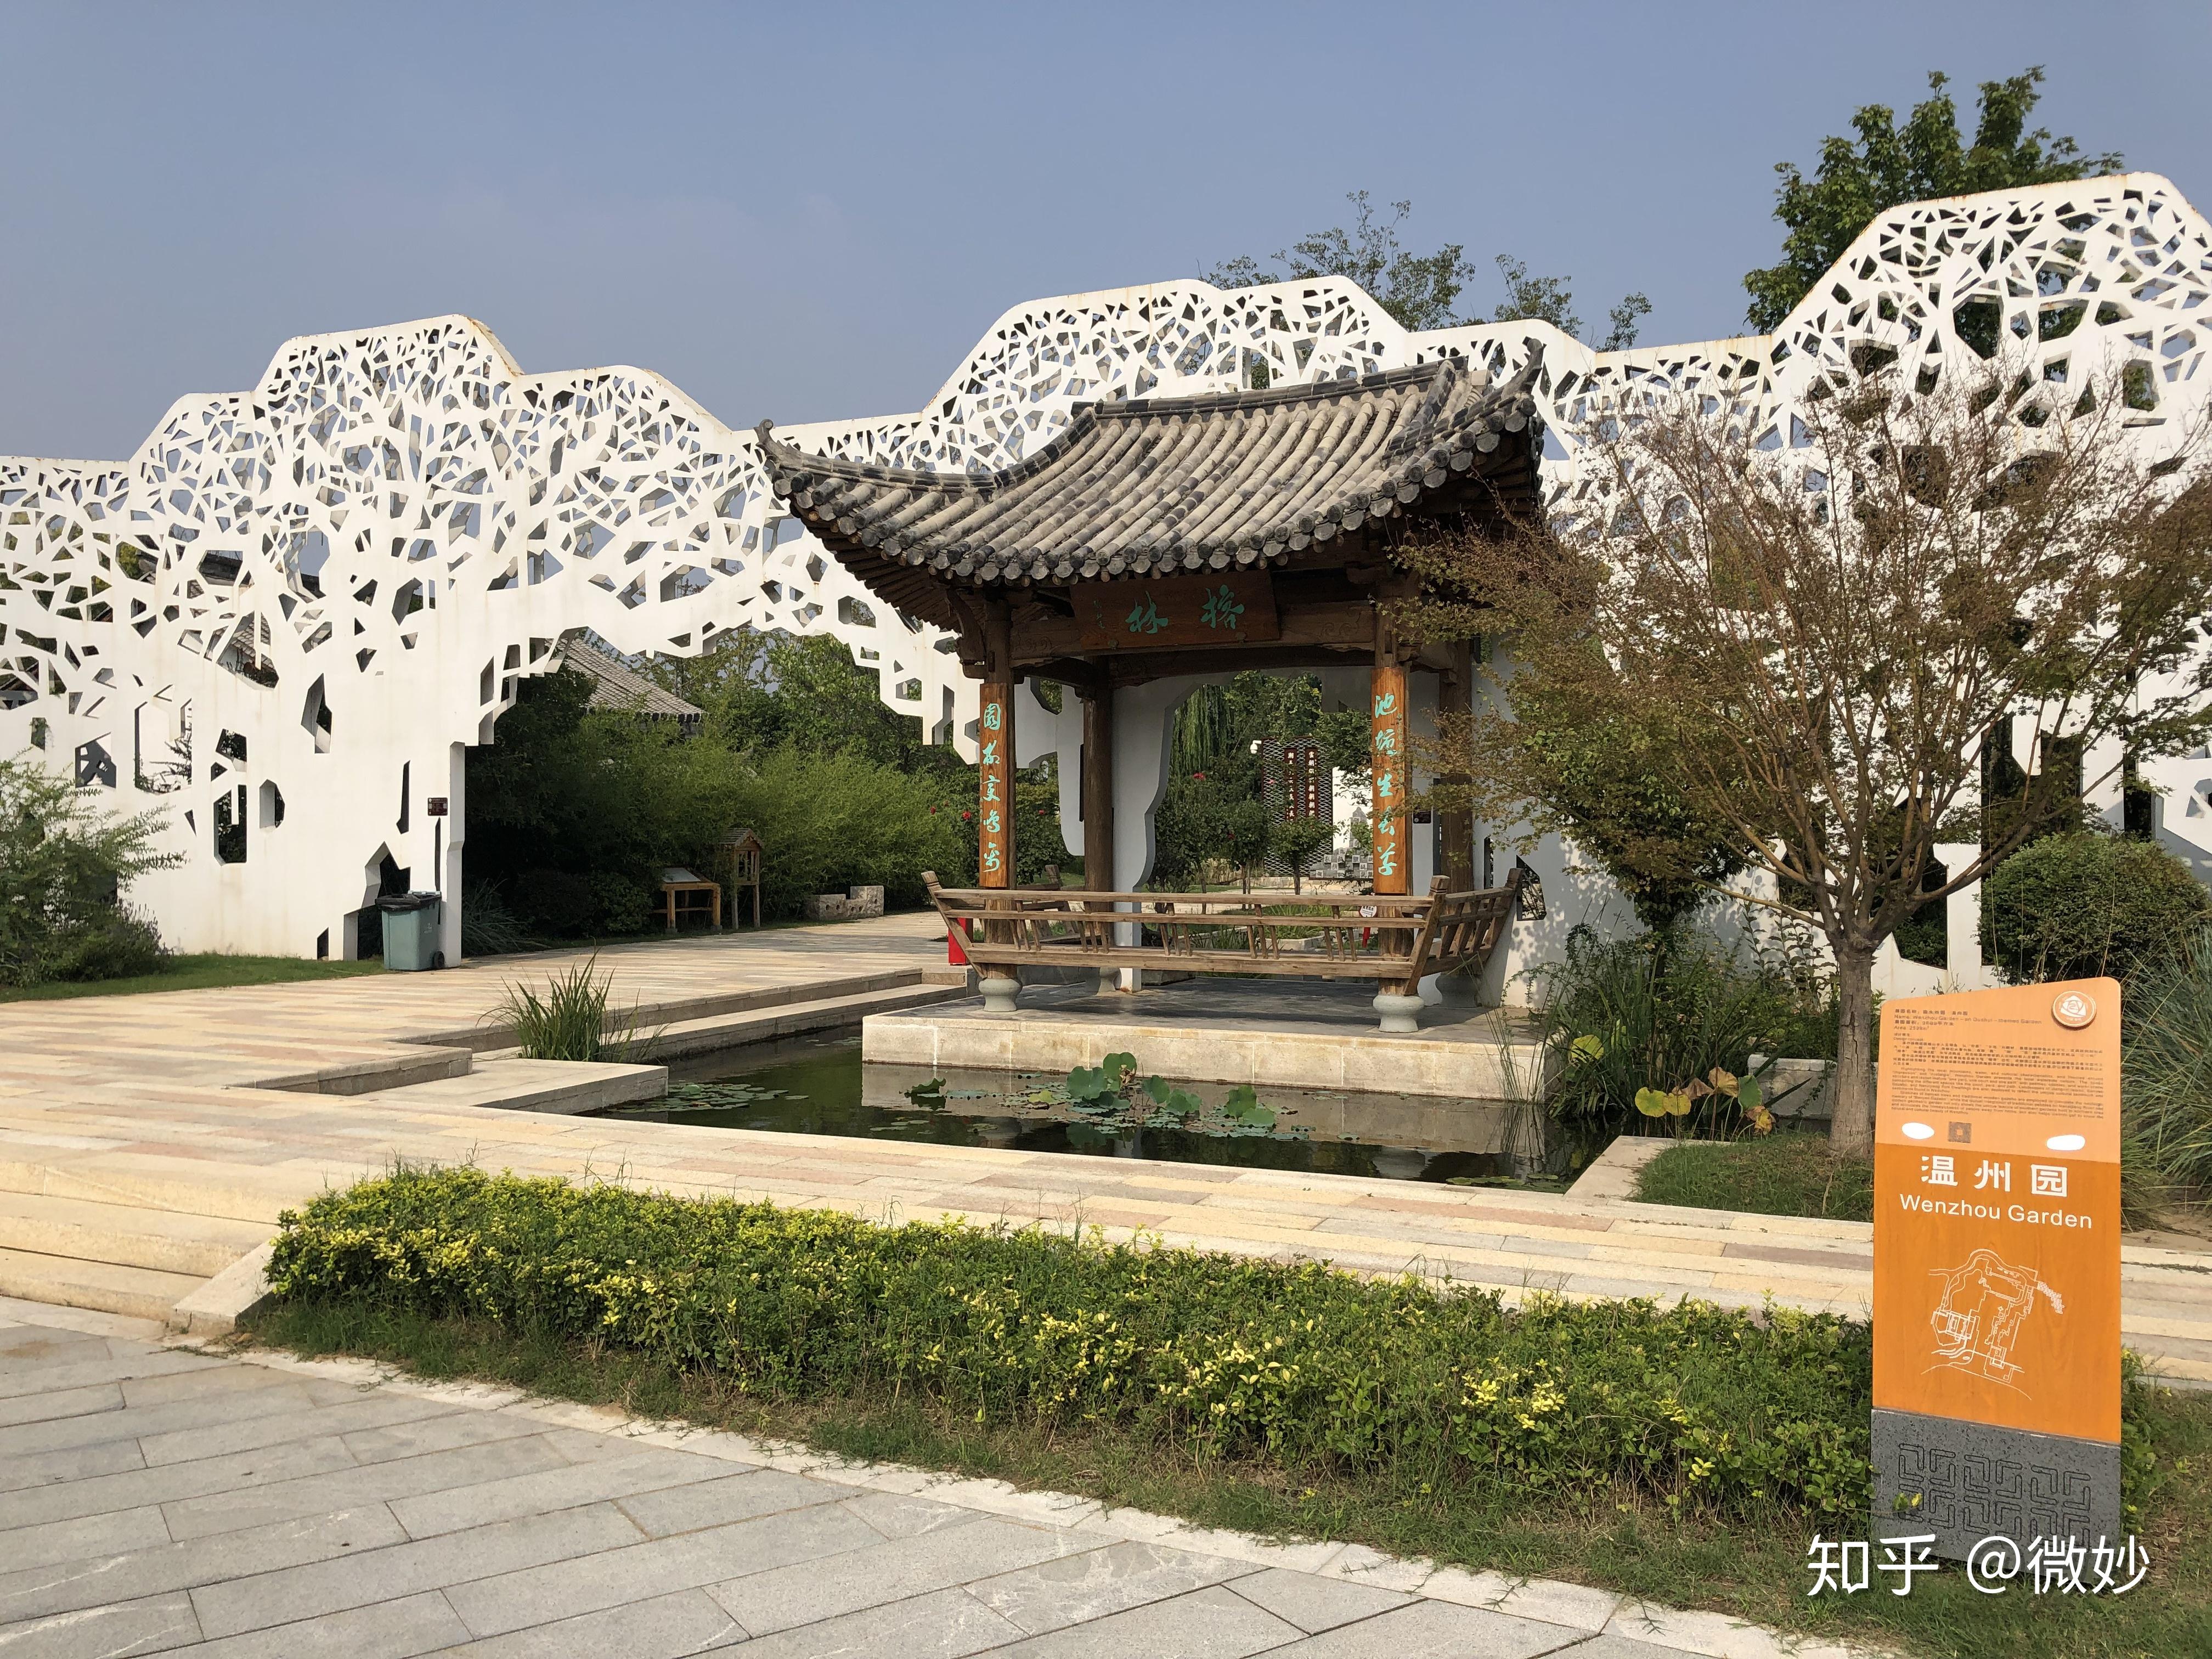 【携程攻略】郑州中国绿化博览园景点,郑州·中国绿化博览园简称郑州绿博园，位于郑州新区核心区，…